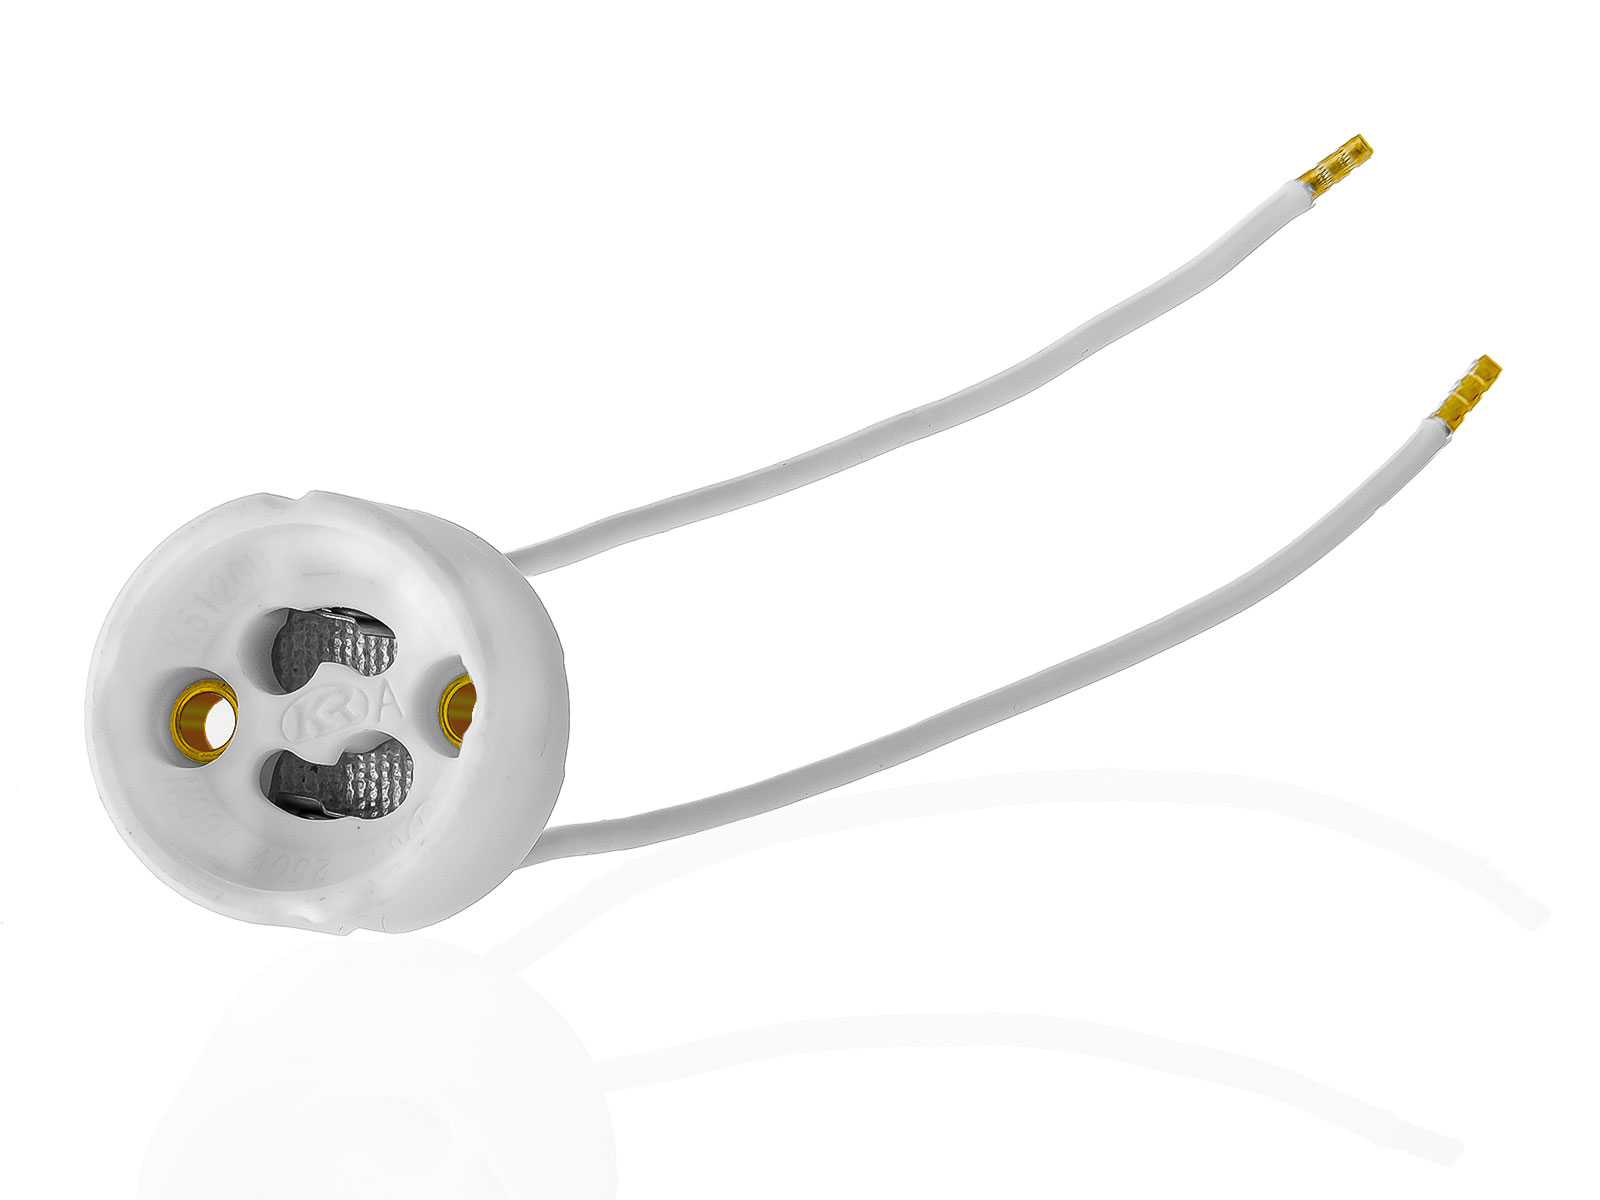 9x GU10 Lampenfassung Sockel aus Keramik mit Qualitäts Silikonkabel für LED und Halogenleuchtmittel XmediaSat GU10.S9 weiß